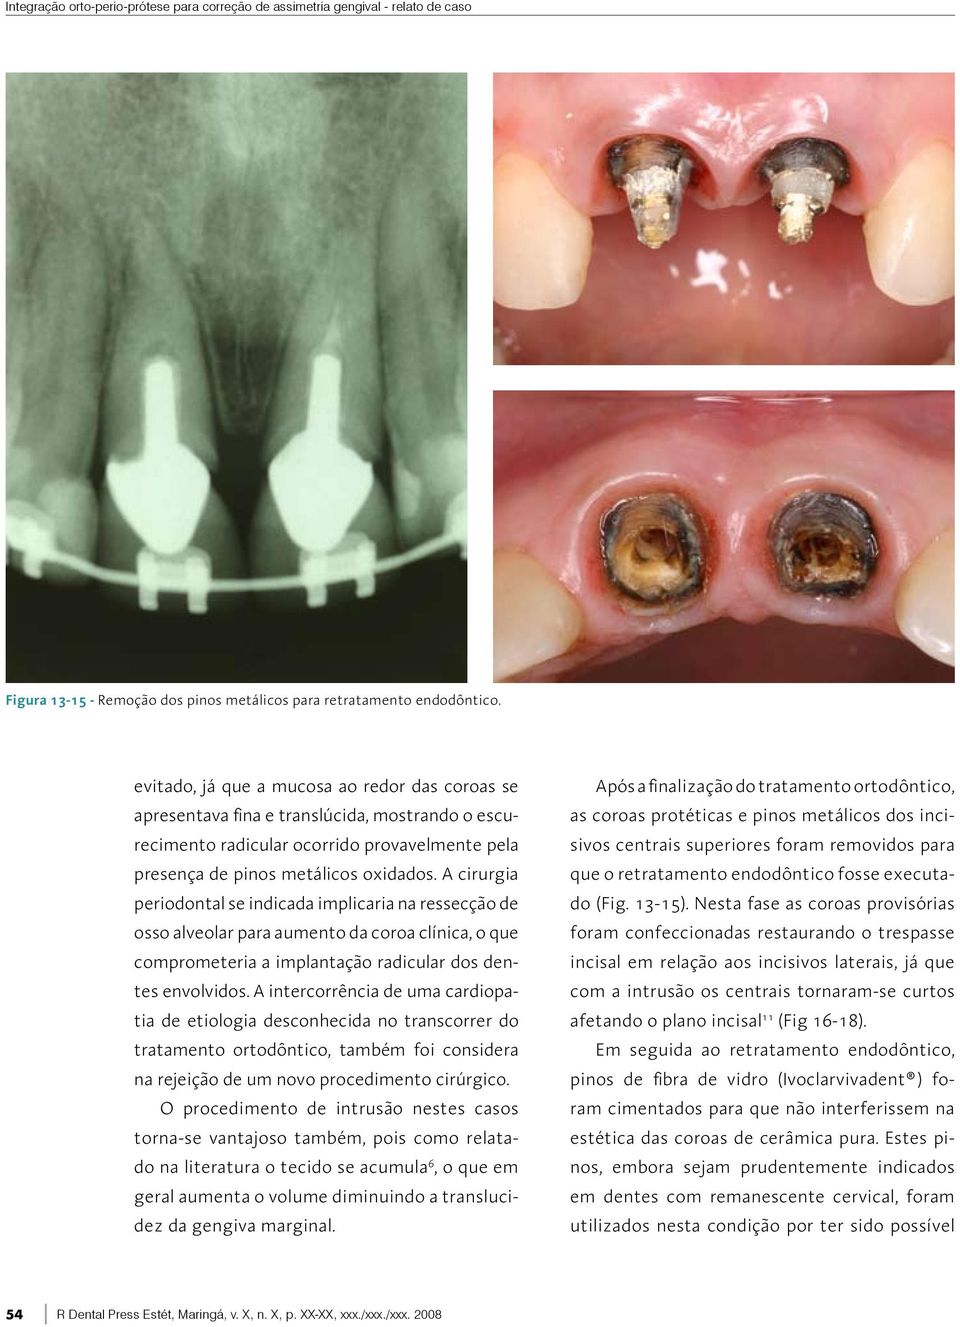 A cirurgia periodontal se indicada implicaria na ressecção de osso alveolar para aumento da coroa clínica, o que comprometeria a implantação radicular dos dentes envolvidos.